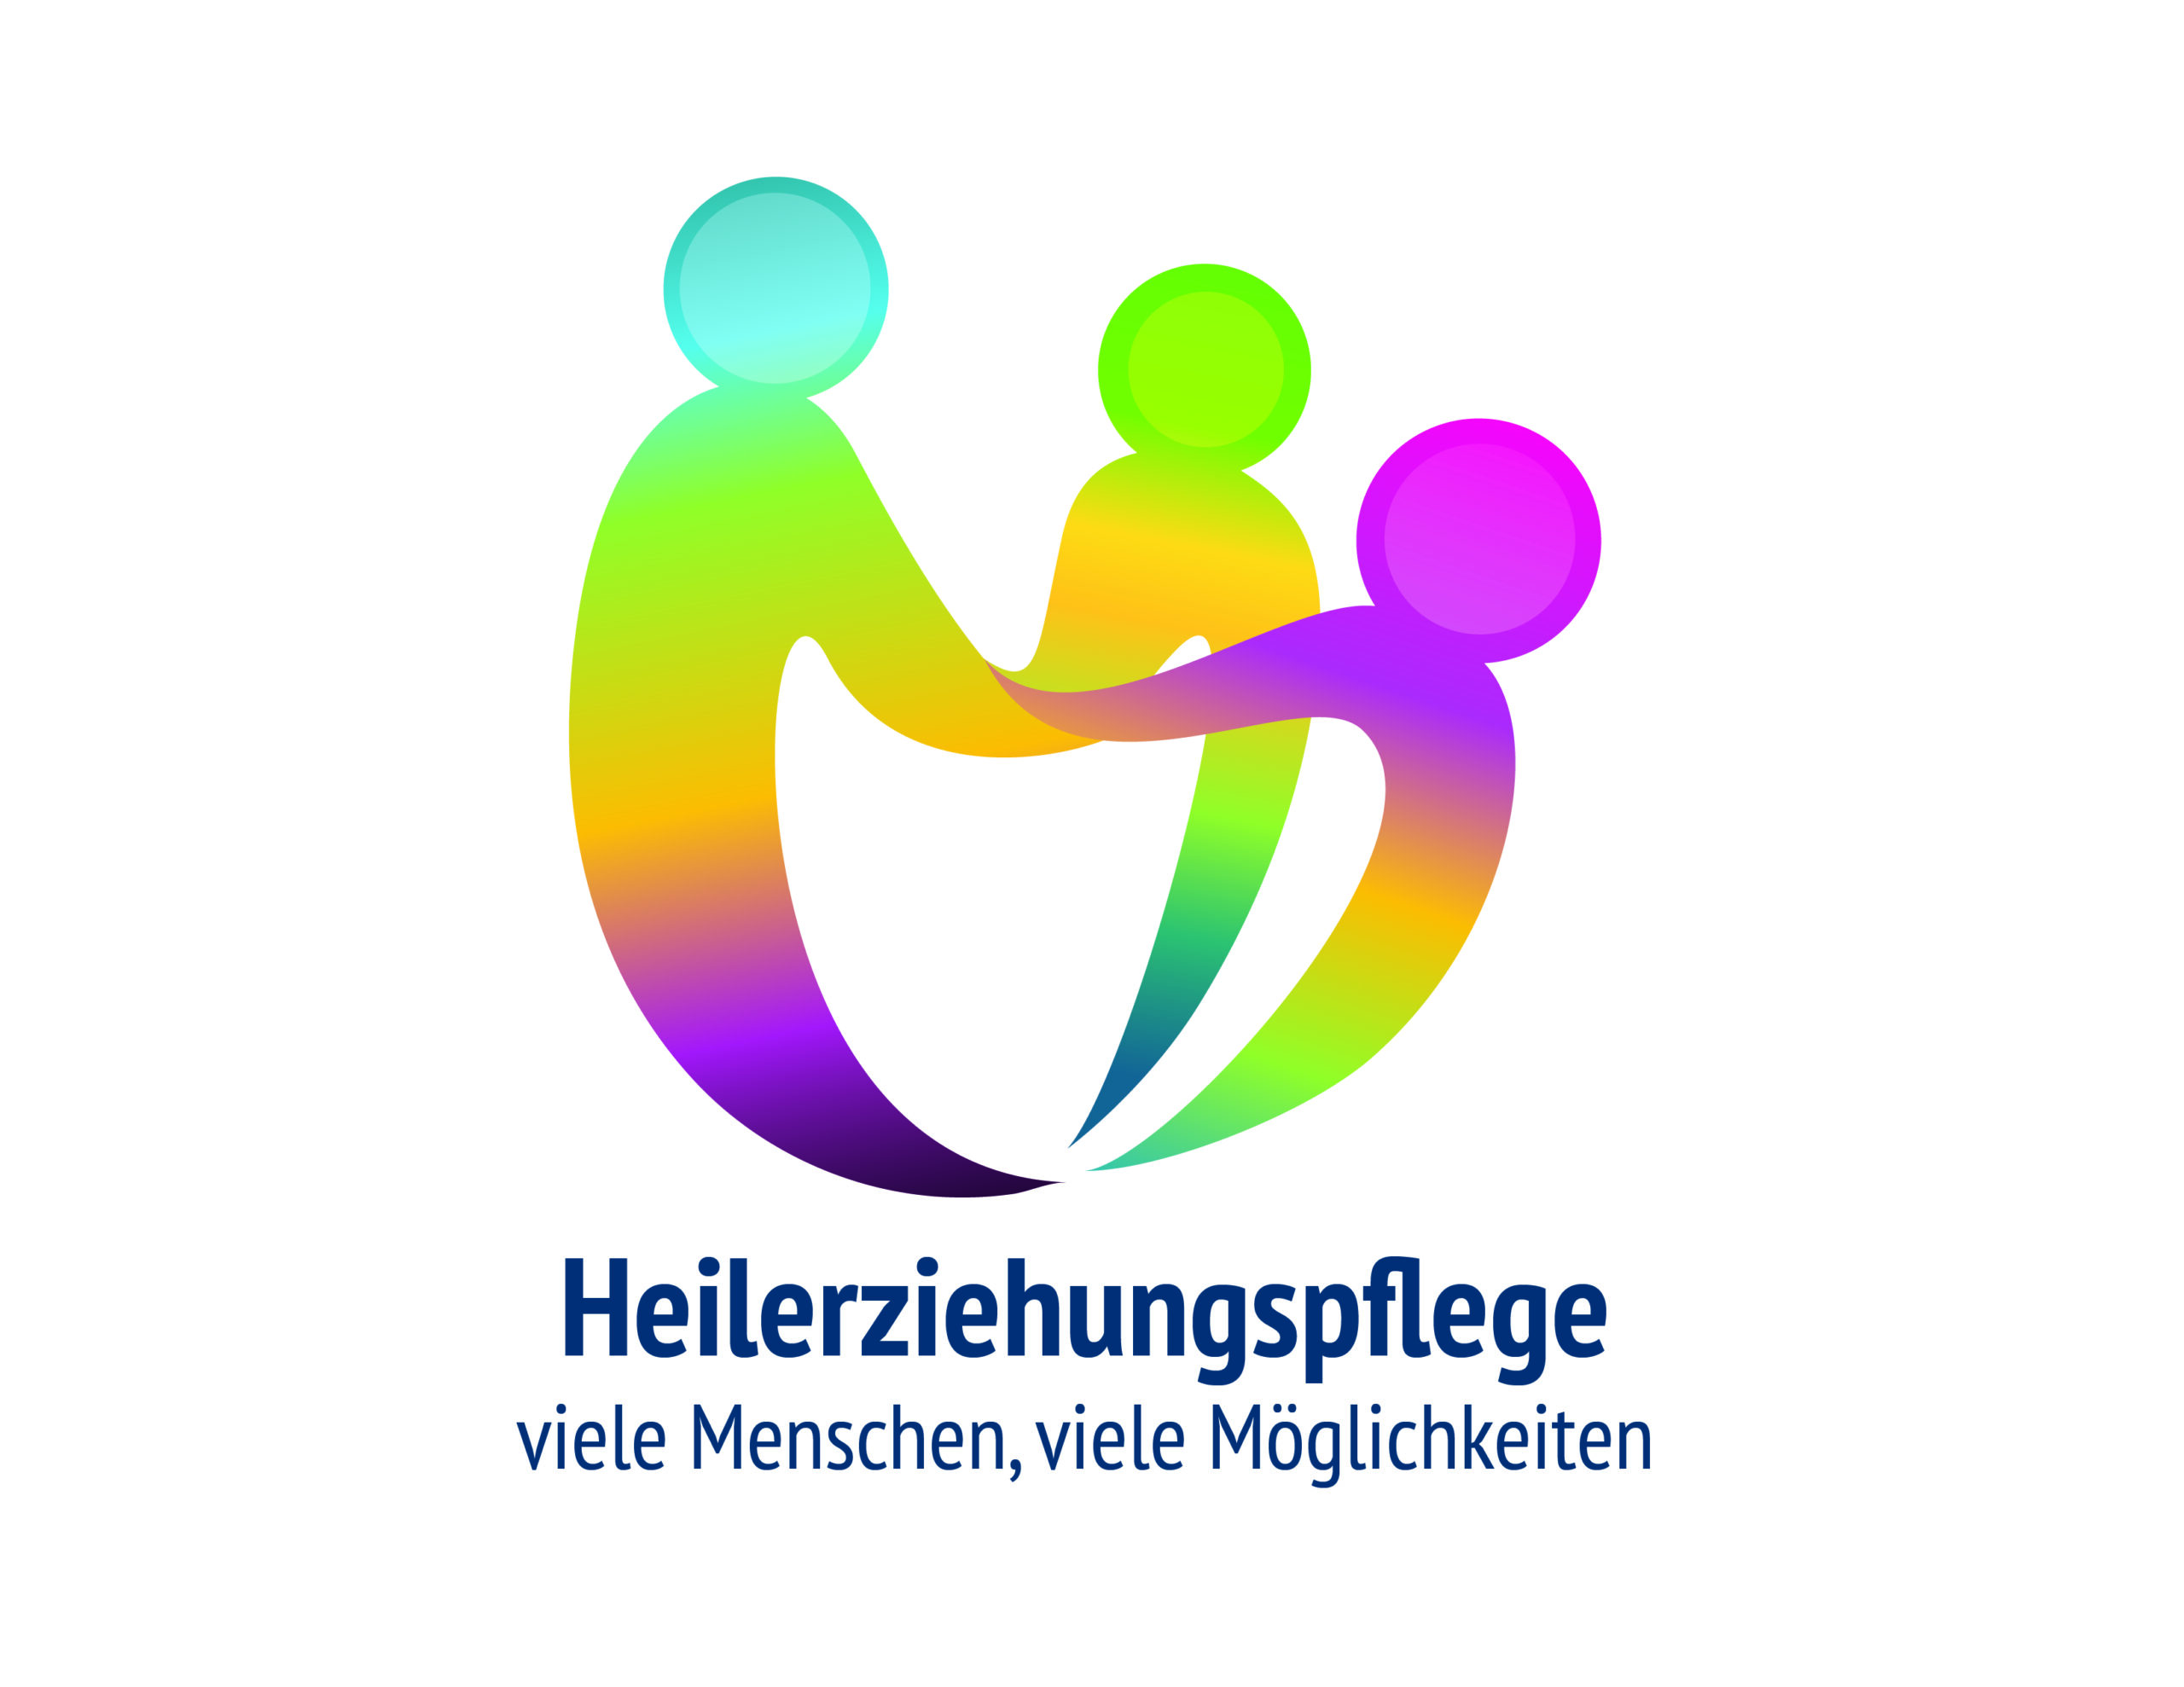 Bundesarbeitsgemeinschaft ruft zum Aktionstag für Heilerziehungspflege auf